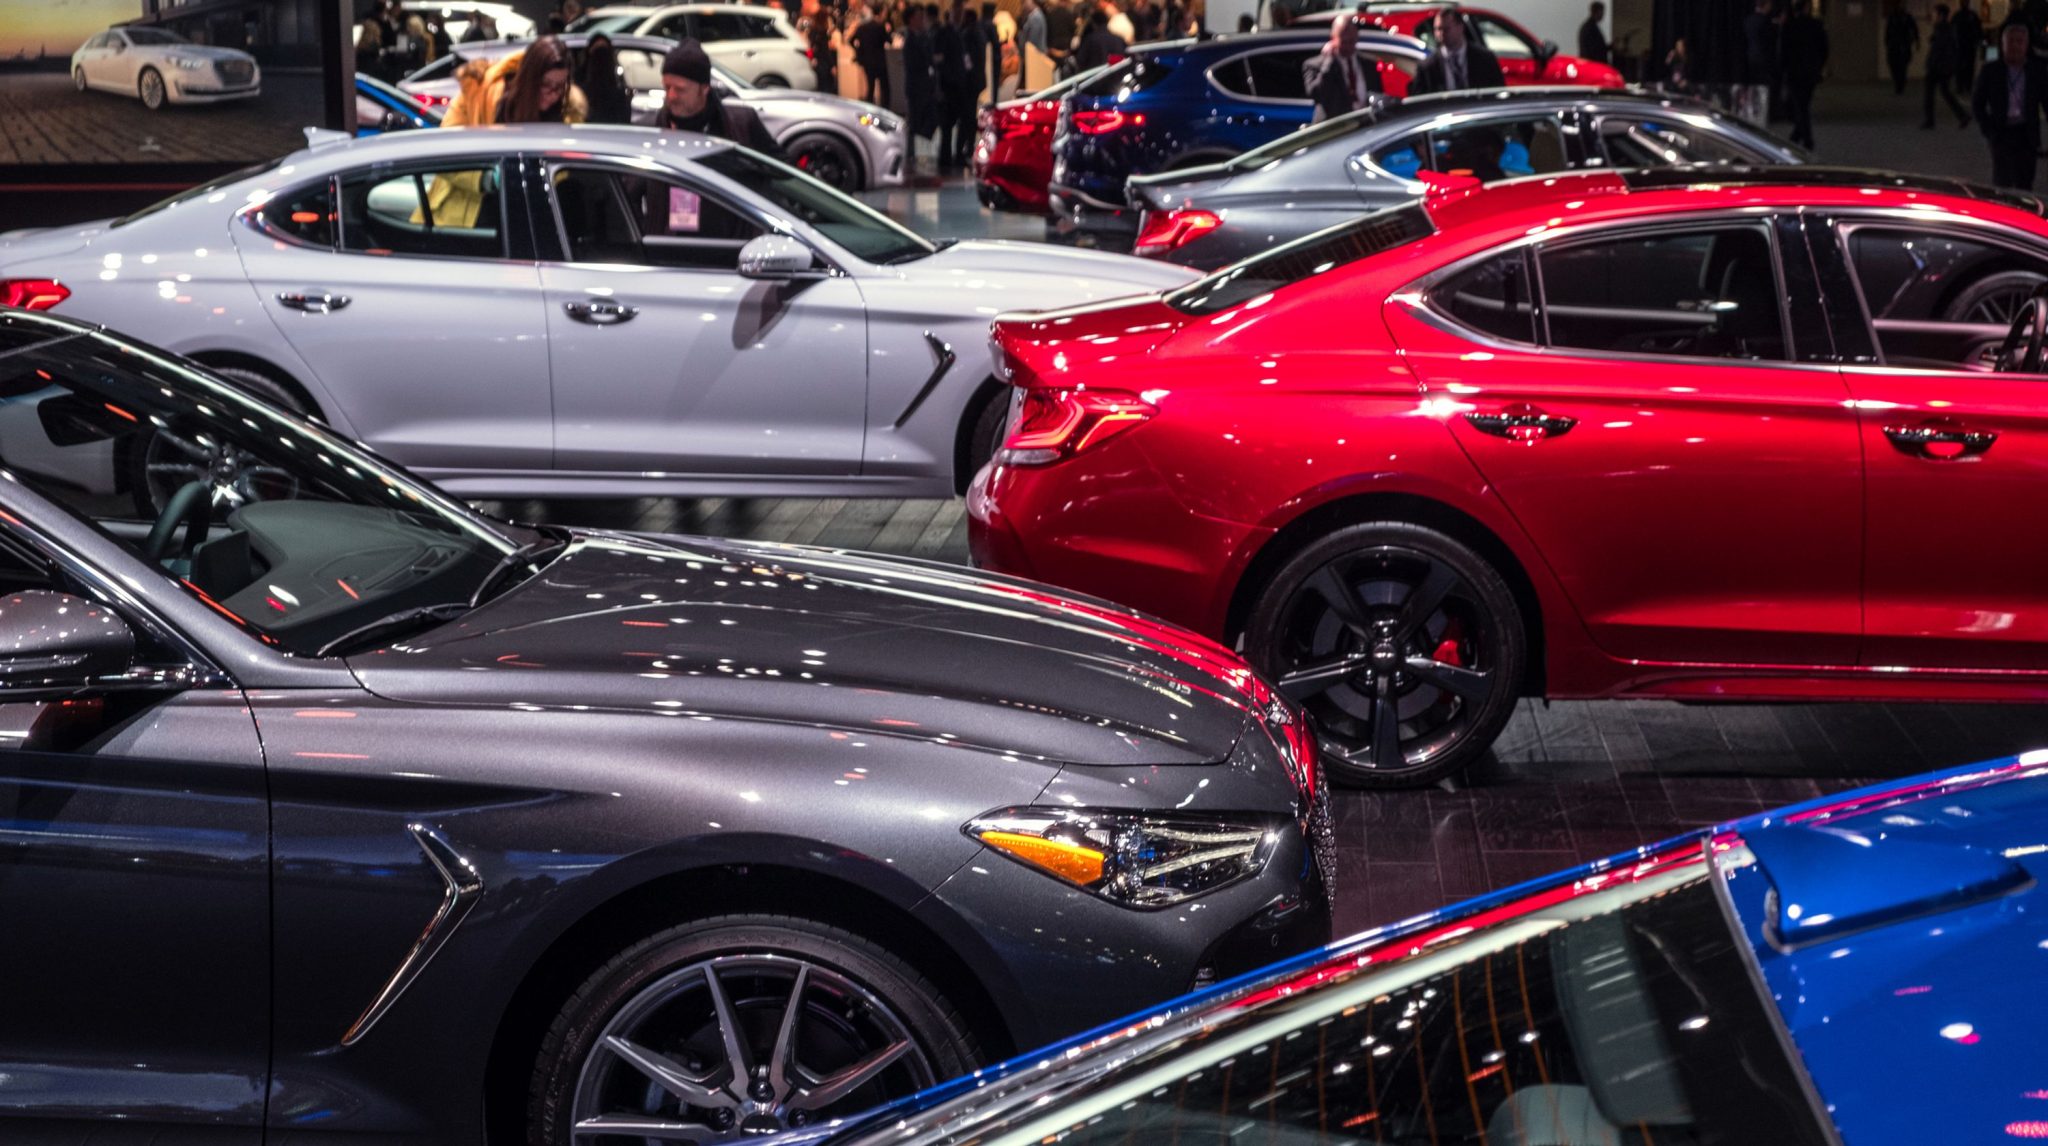 "بالصور" أبرز السيارات التي تم تدشينها في معرض ديترويت للسيارات 2019 1